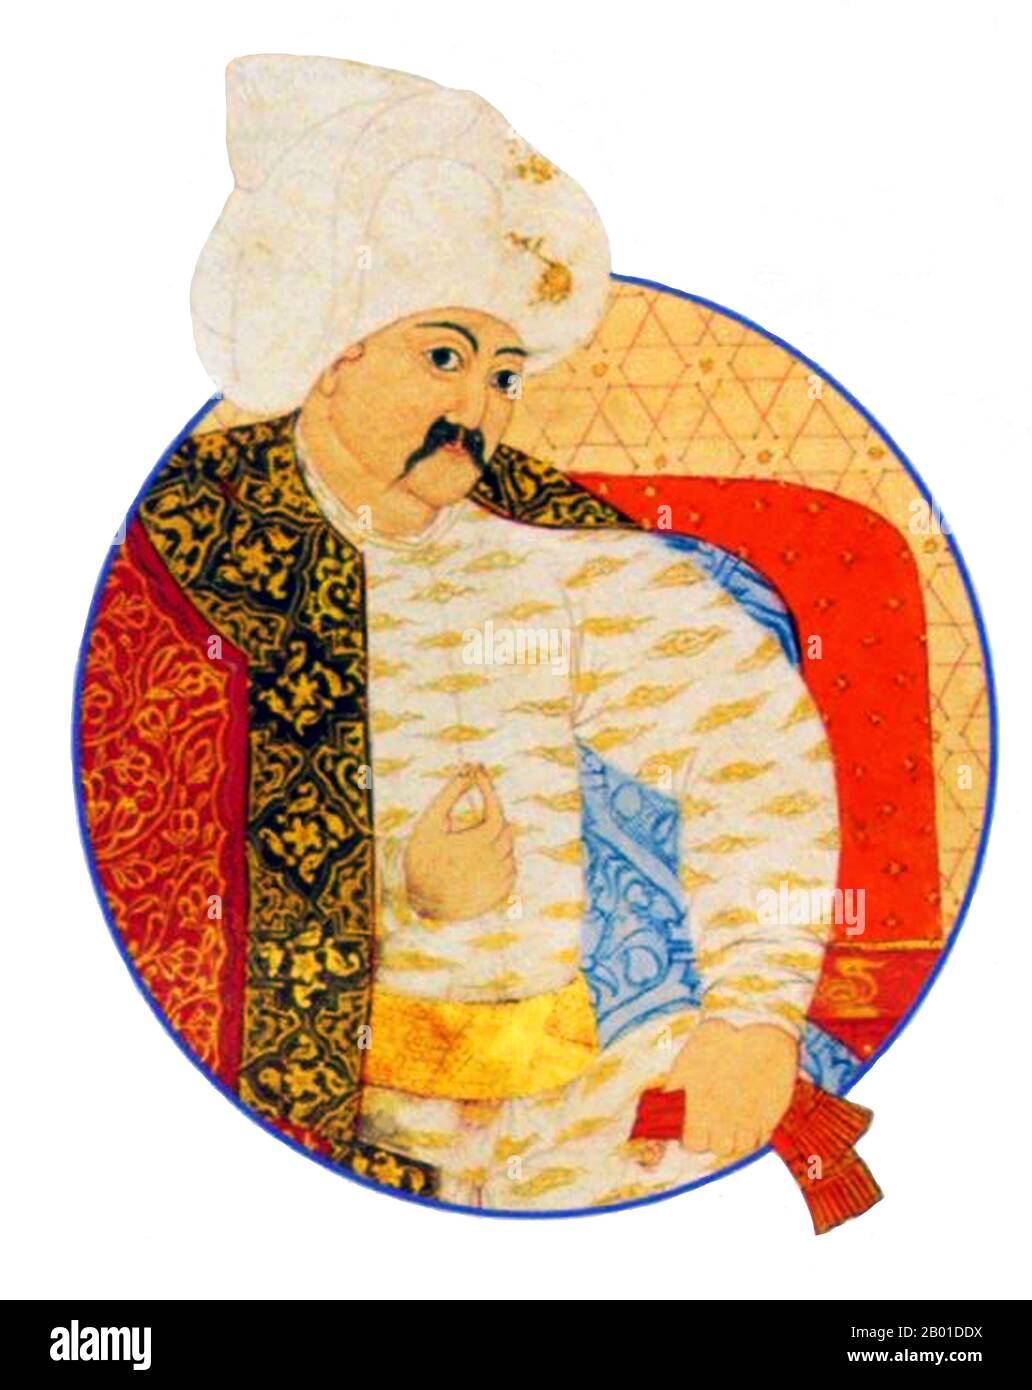 Turchia: Selim i, Sultano dell'Impero Ottomano (10 ottobre 1470 - 22 settembre 1520). Pittura in miniatura, c. 1512-1520. Selim i, Yavuz Sultân Selim Khan, soprannominato Yavuz 'lo Stern' o 'il Resoluto', ma spesso reso in inglese come 'il bordo', fu Sultano dell'Impero Ottomano dal 1512 al 1520. Fu anche il primo sultano ottomano ad assumere il titolo di Califfo dell'Islam. Gli fu conferito il titolo di "Hâdim ül Haramain ish Sharifain" (Servo delle Città Santa della Mecca e della Medina), dallo Sharif della Mecca nel 1517. Selim portò l'impero alla guida del ramo sunnita dell'Islam. Foto Stock